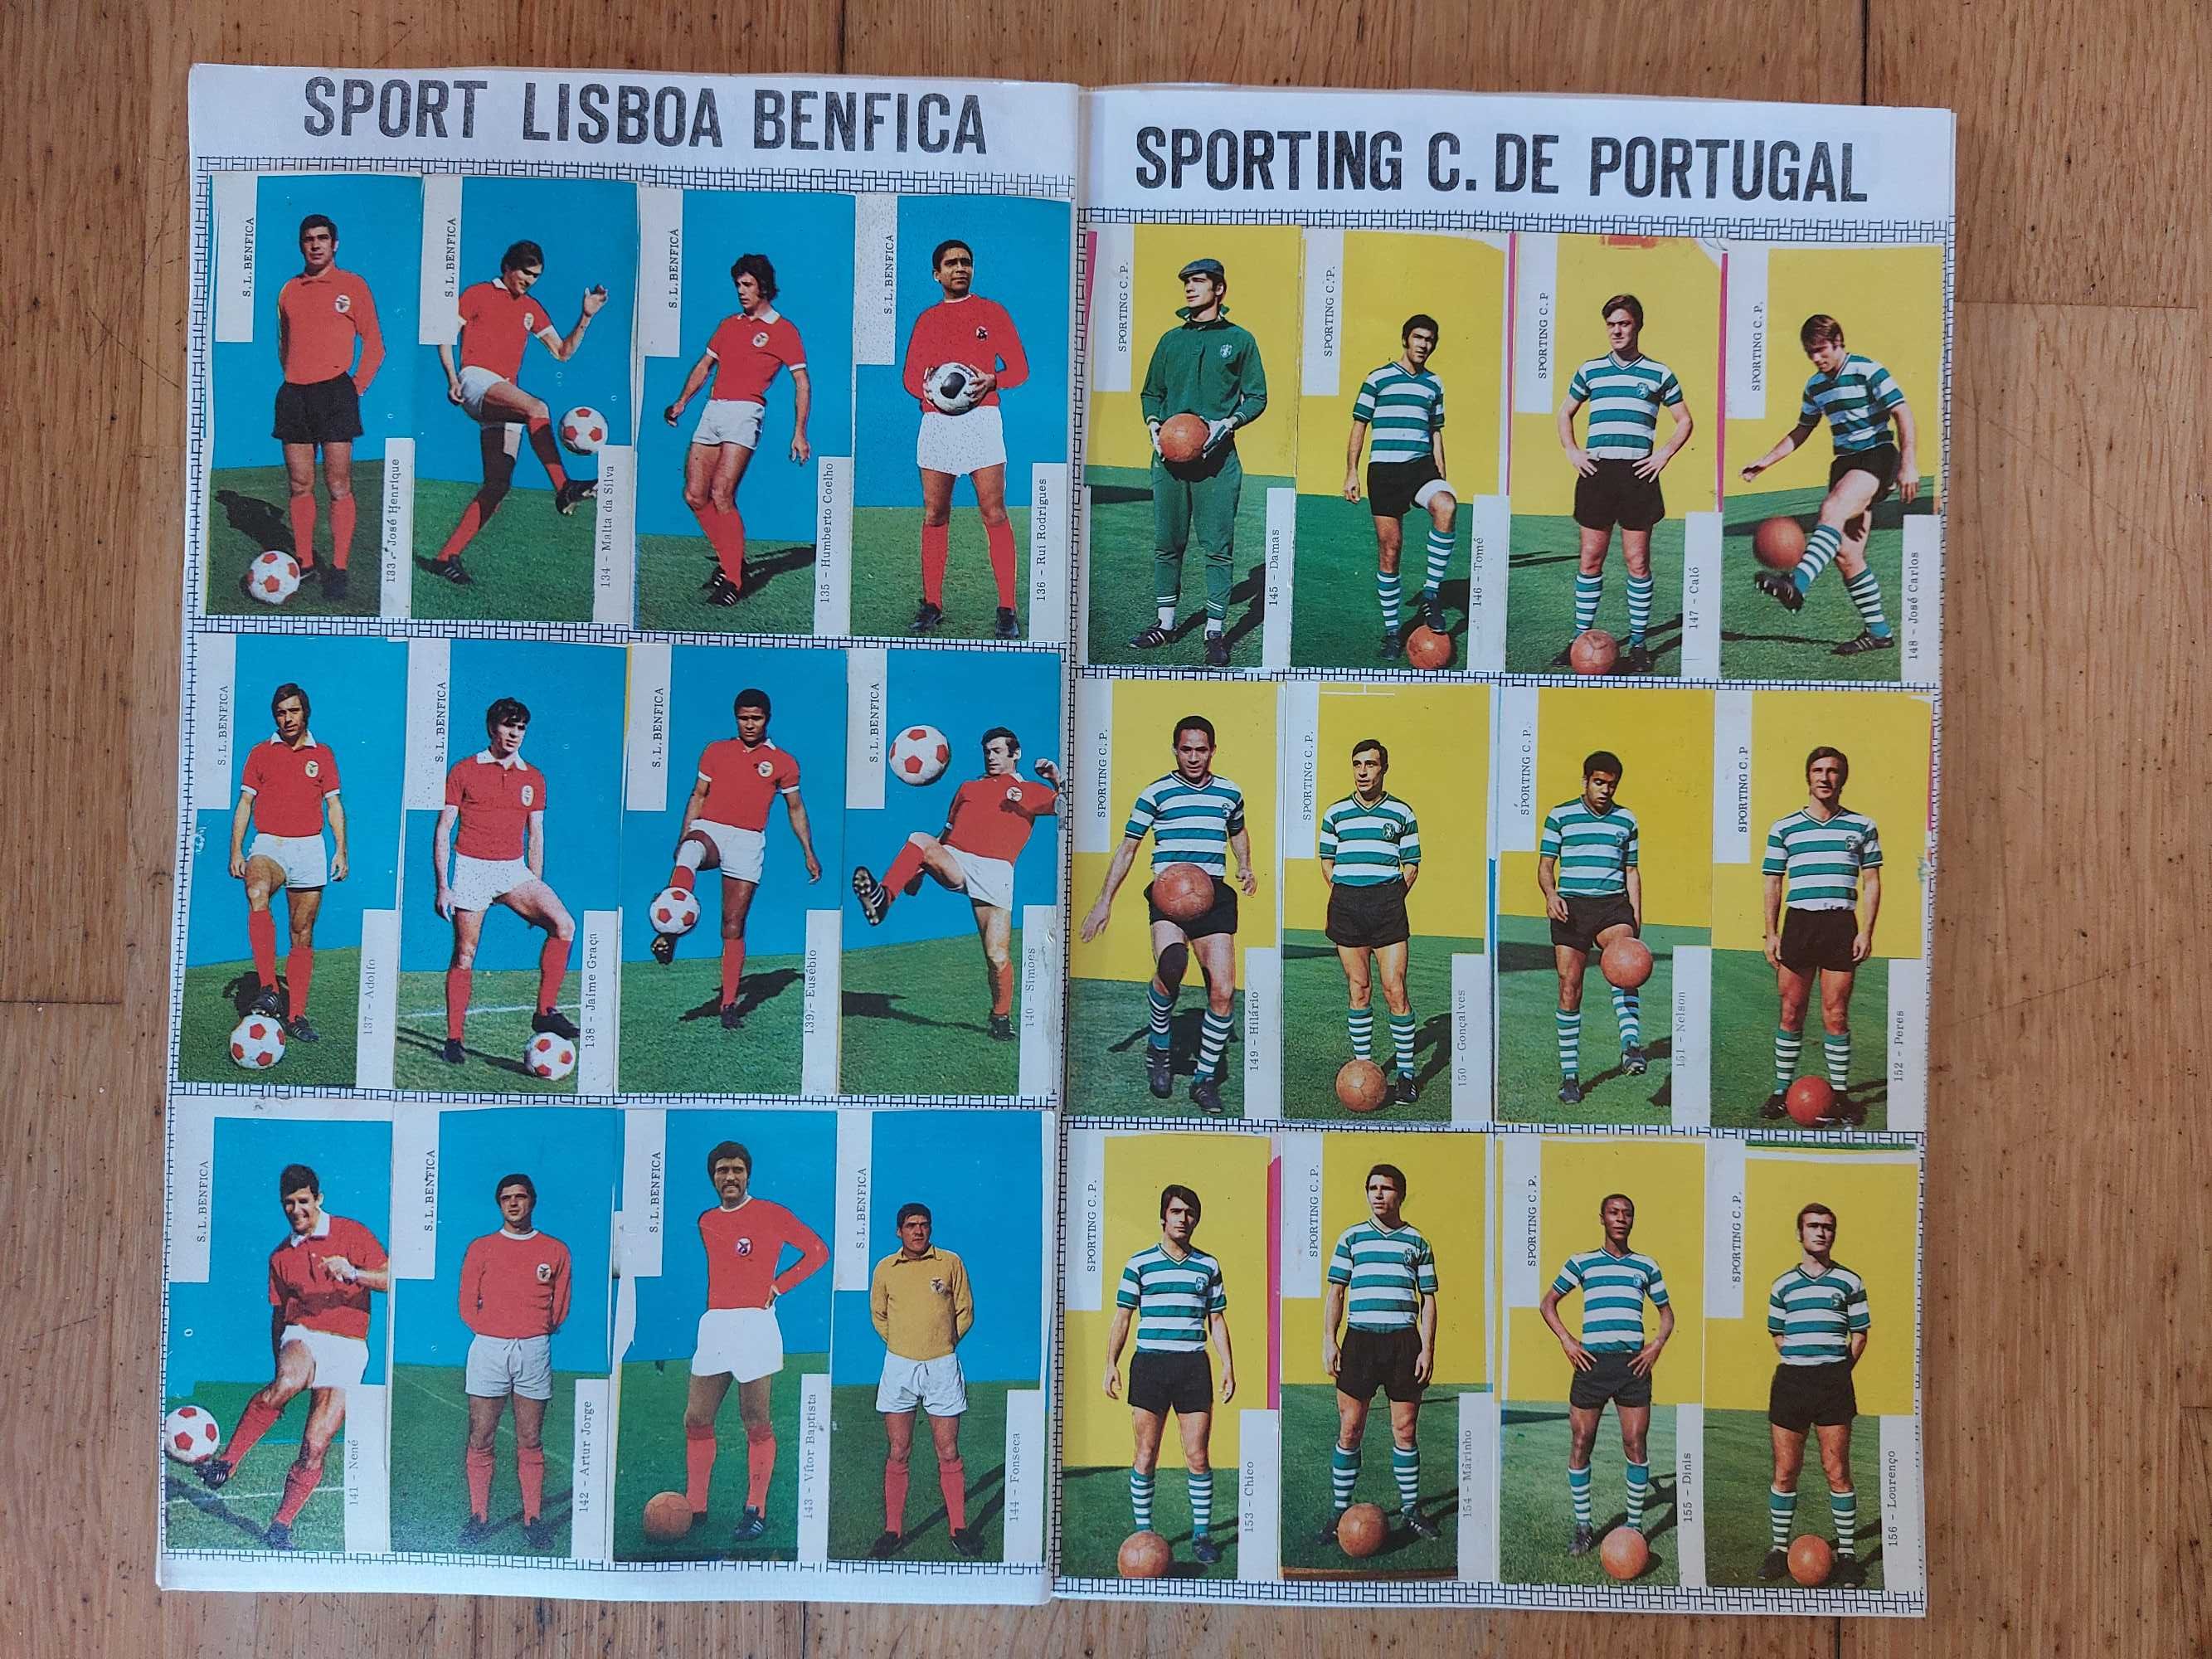 Caderneta de cromos "Equipas de Futebol 1971-72" - Completa